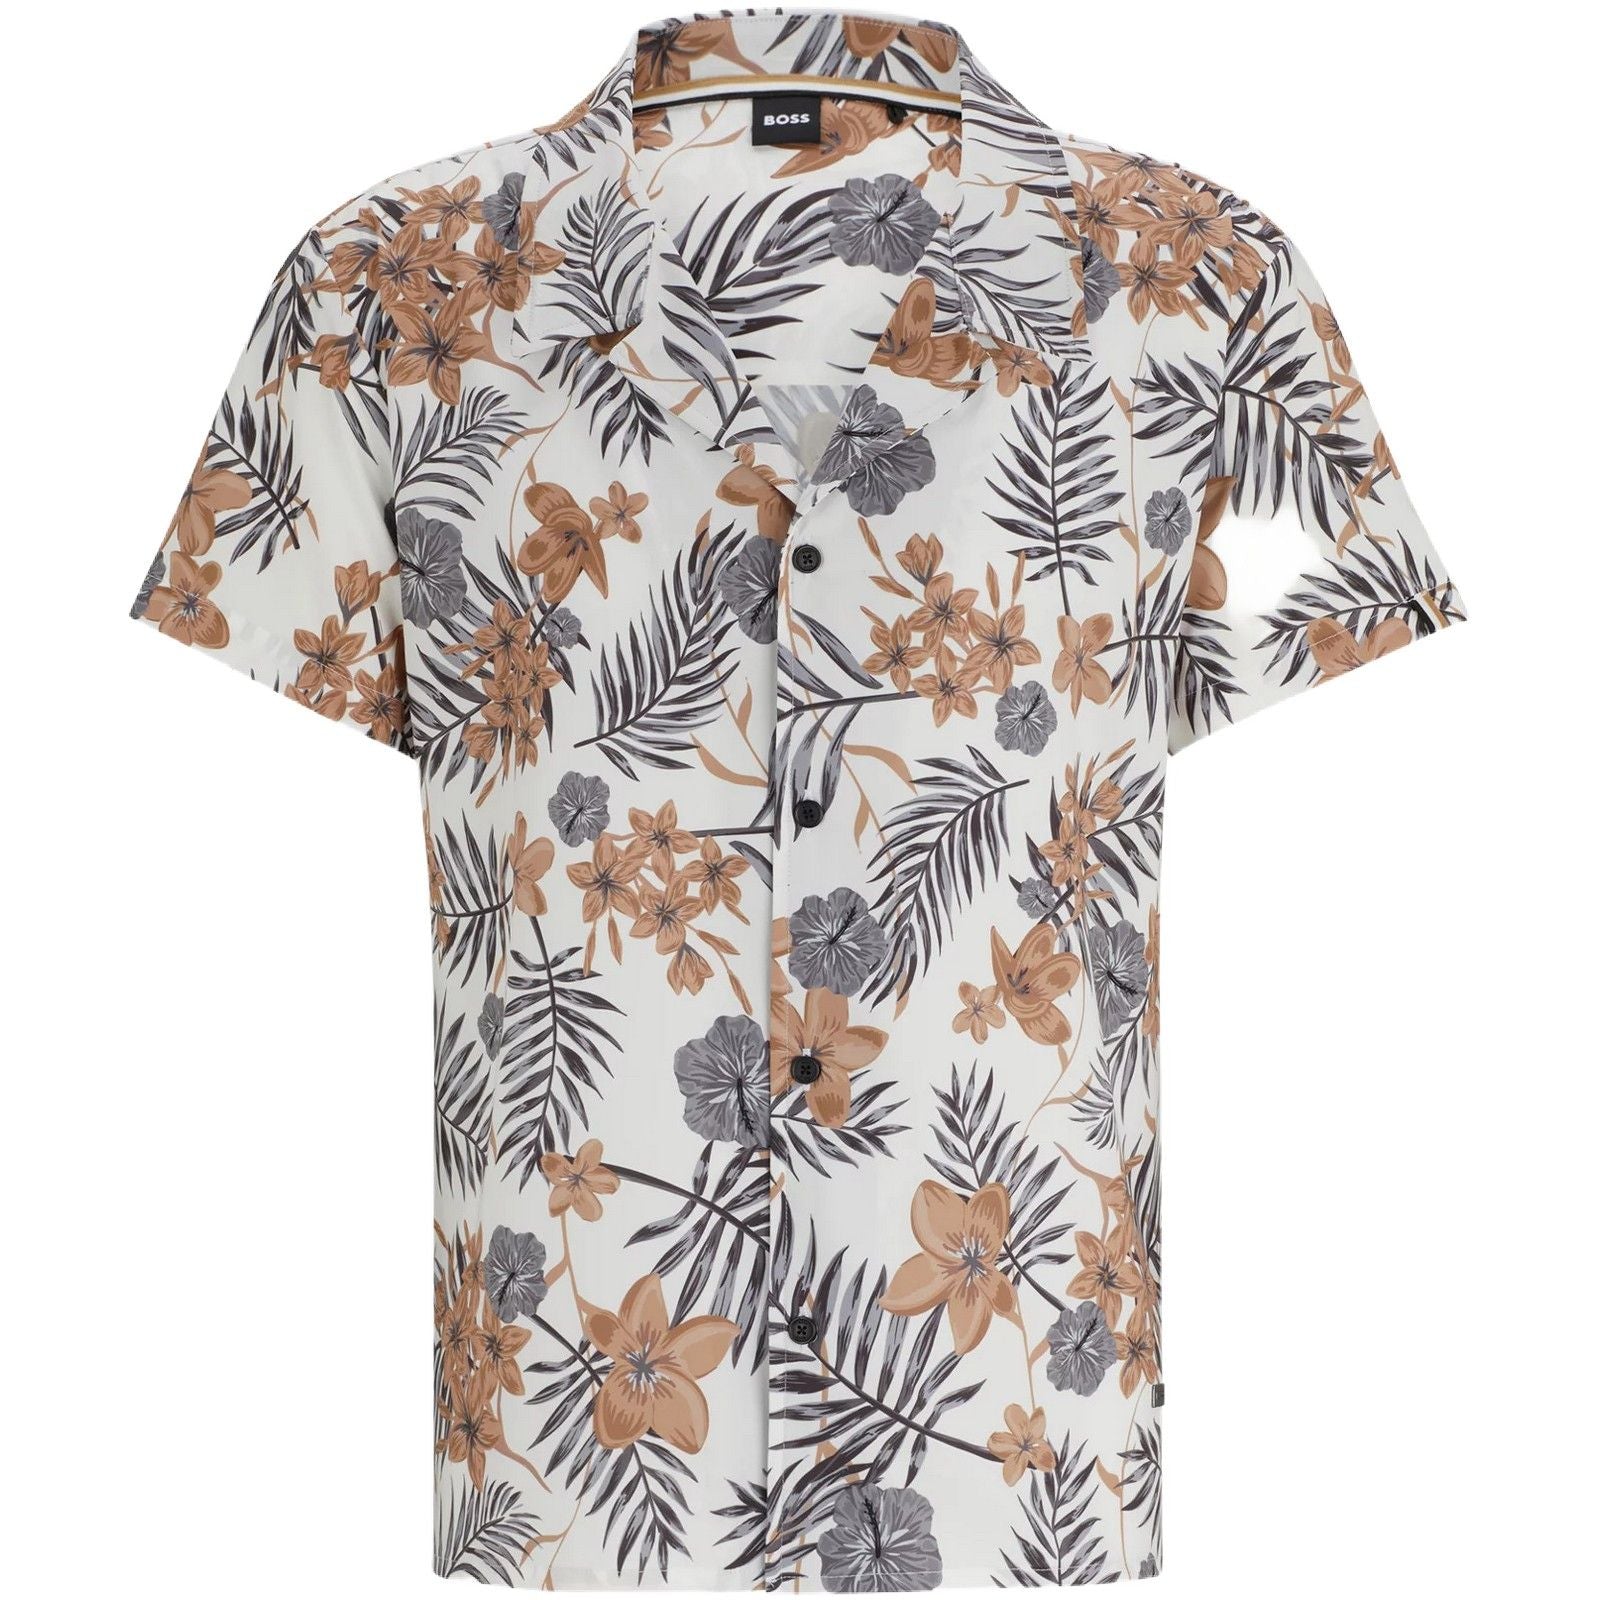 Camicie casual Uomo Hugo Boss - Beach Shirt 10257205 01 - Bianco